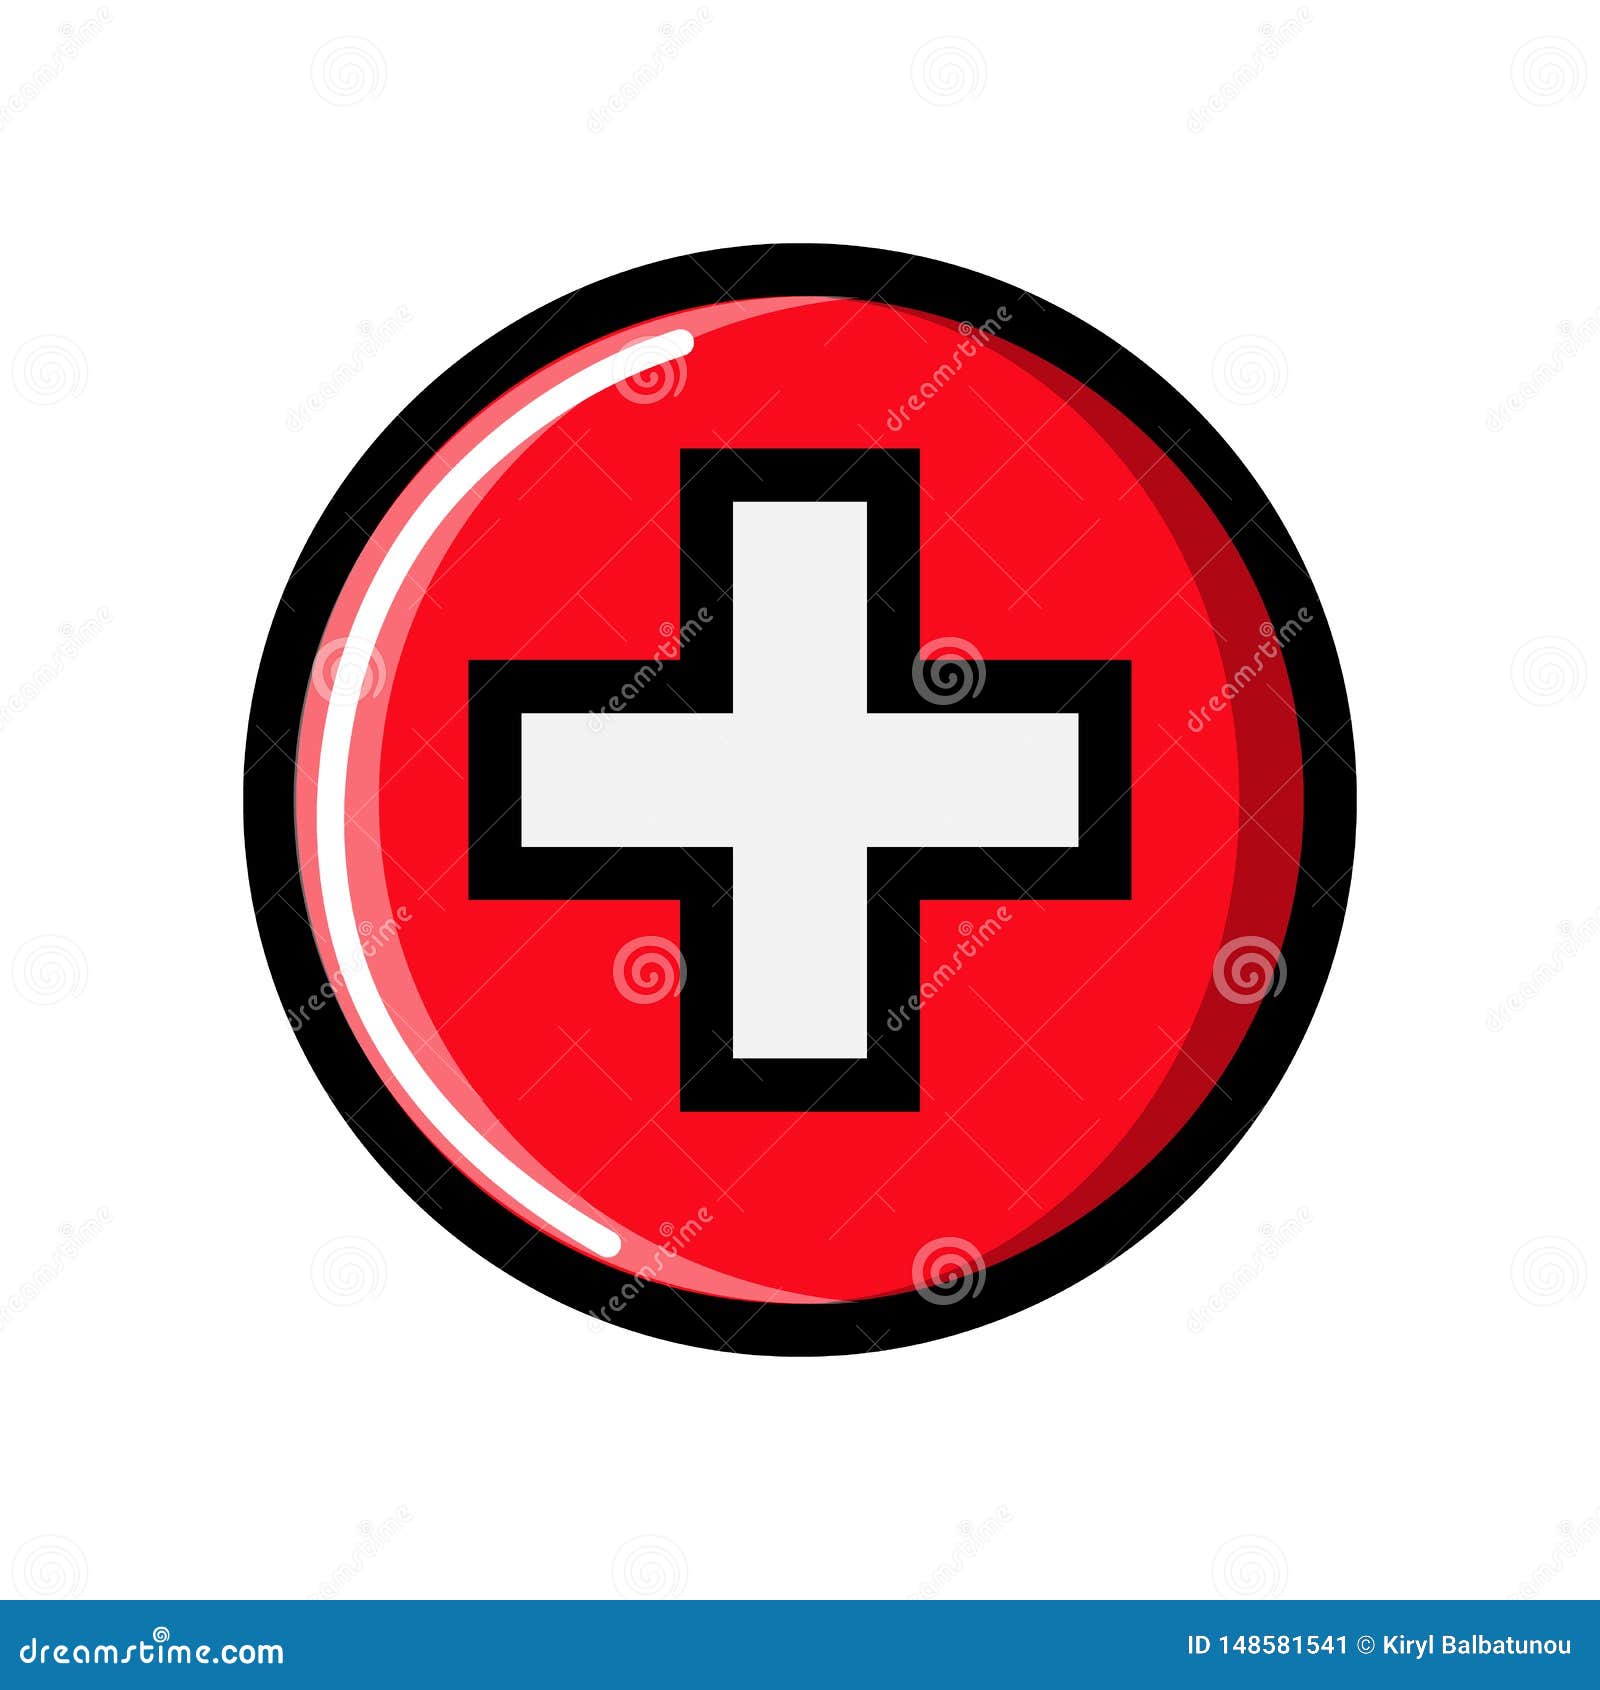 Biểu tượng logo nền y tế là biểu tượng của sự chăm sóc sức khỏe và y tế trong xã hội. Xem hình ảnh liên quan để tìm hiểu thêm về những dịch vụ chăm sóc sức khỏe và y tế tuyệt vời mà những biểu tượng này đại diện.